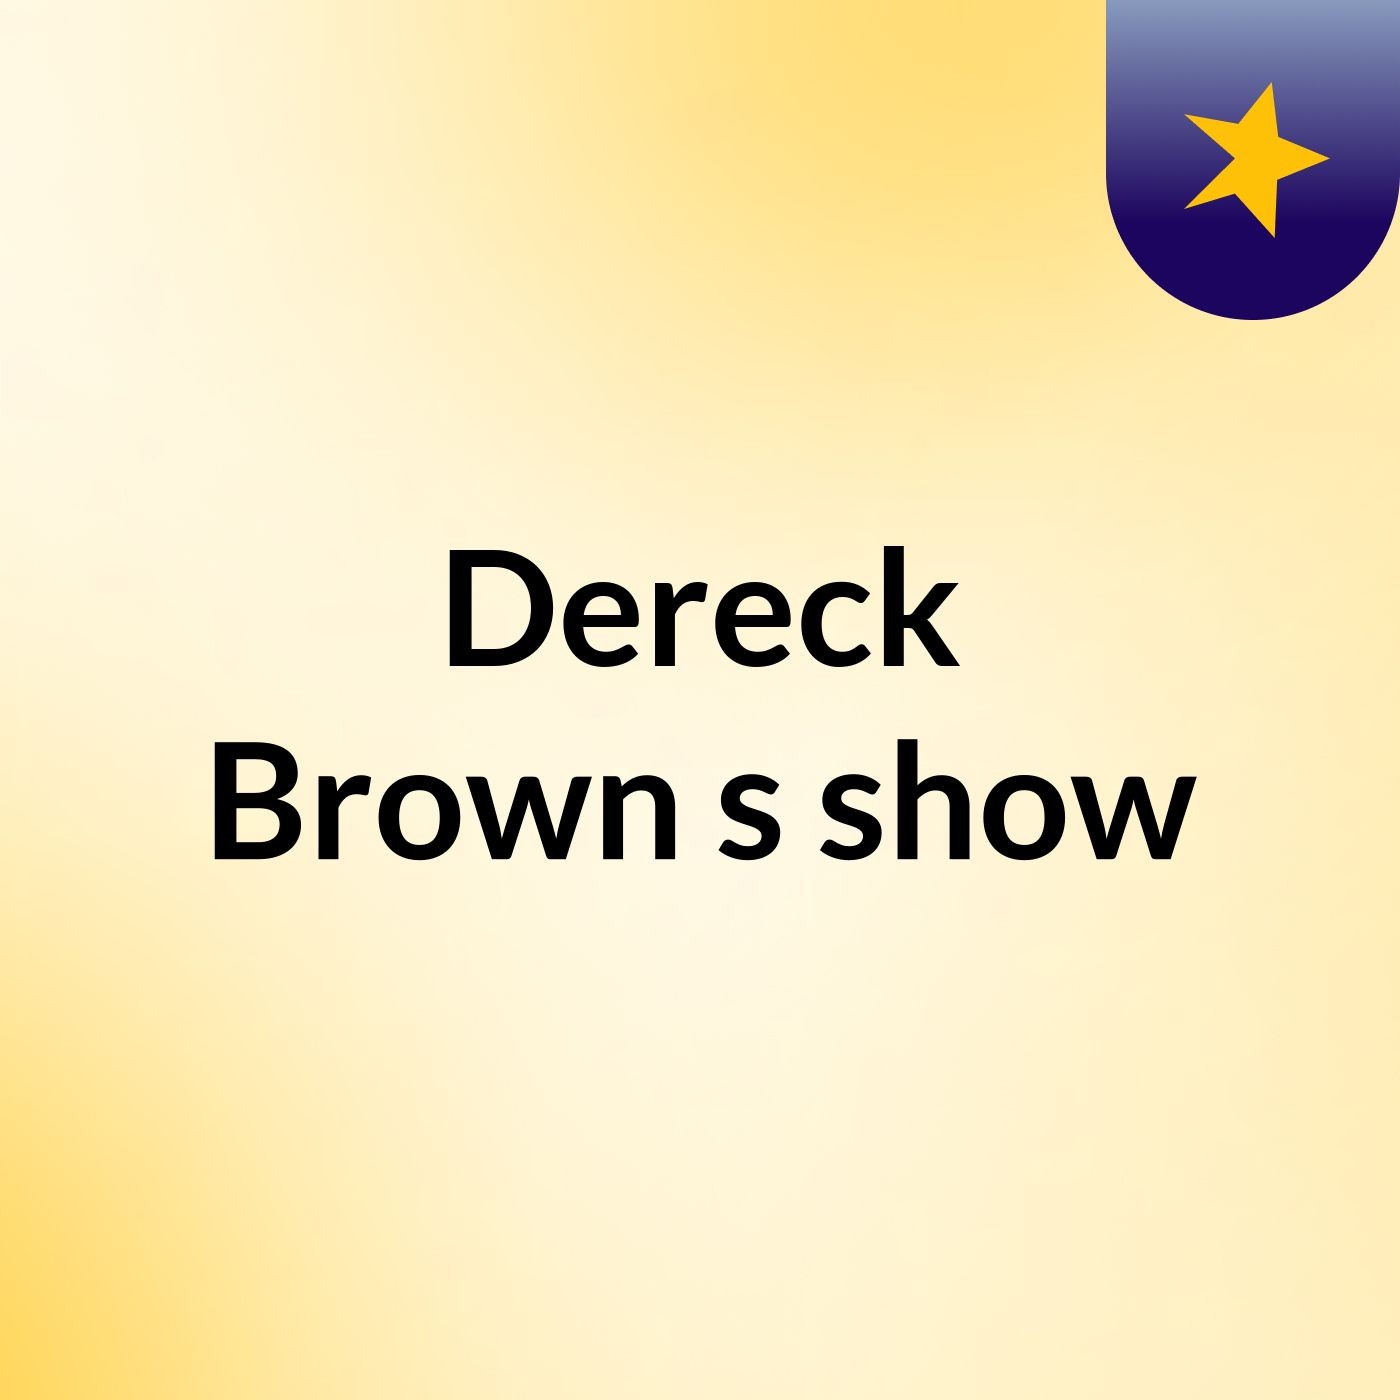 Dereck Brown's show